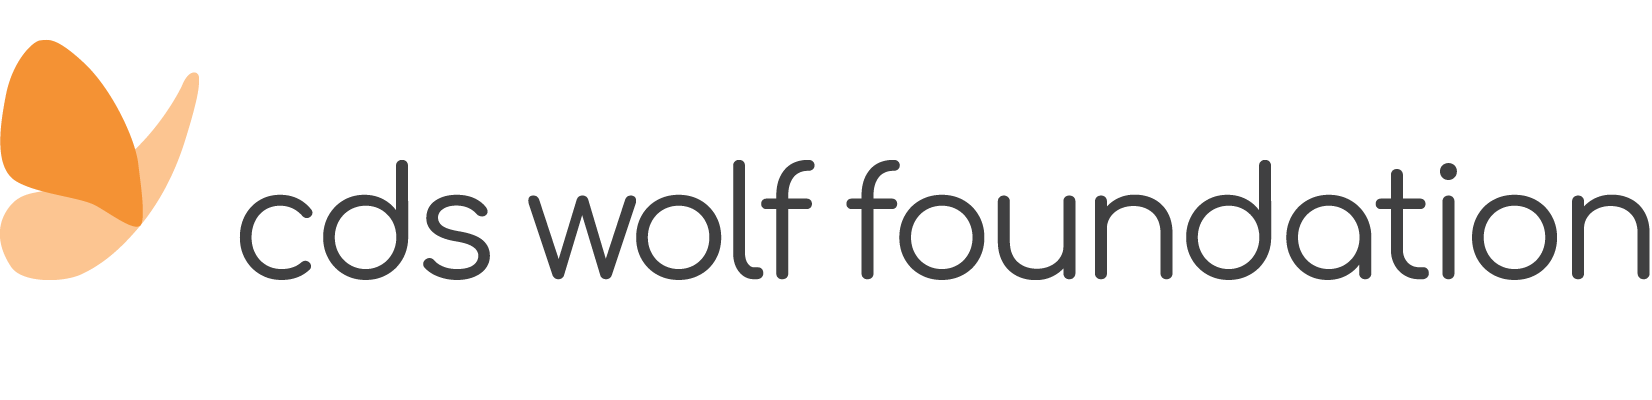 cds wolf foundation logo